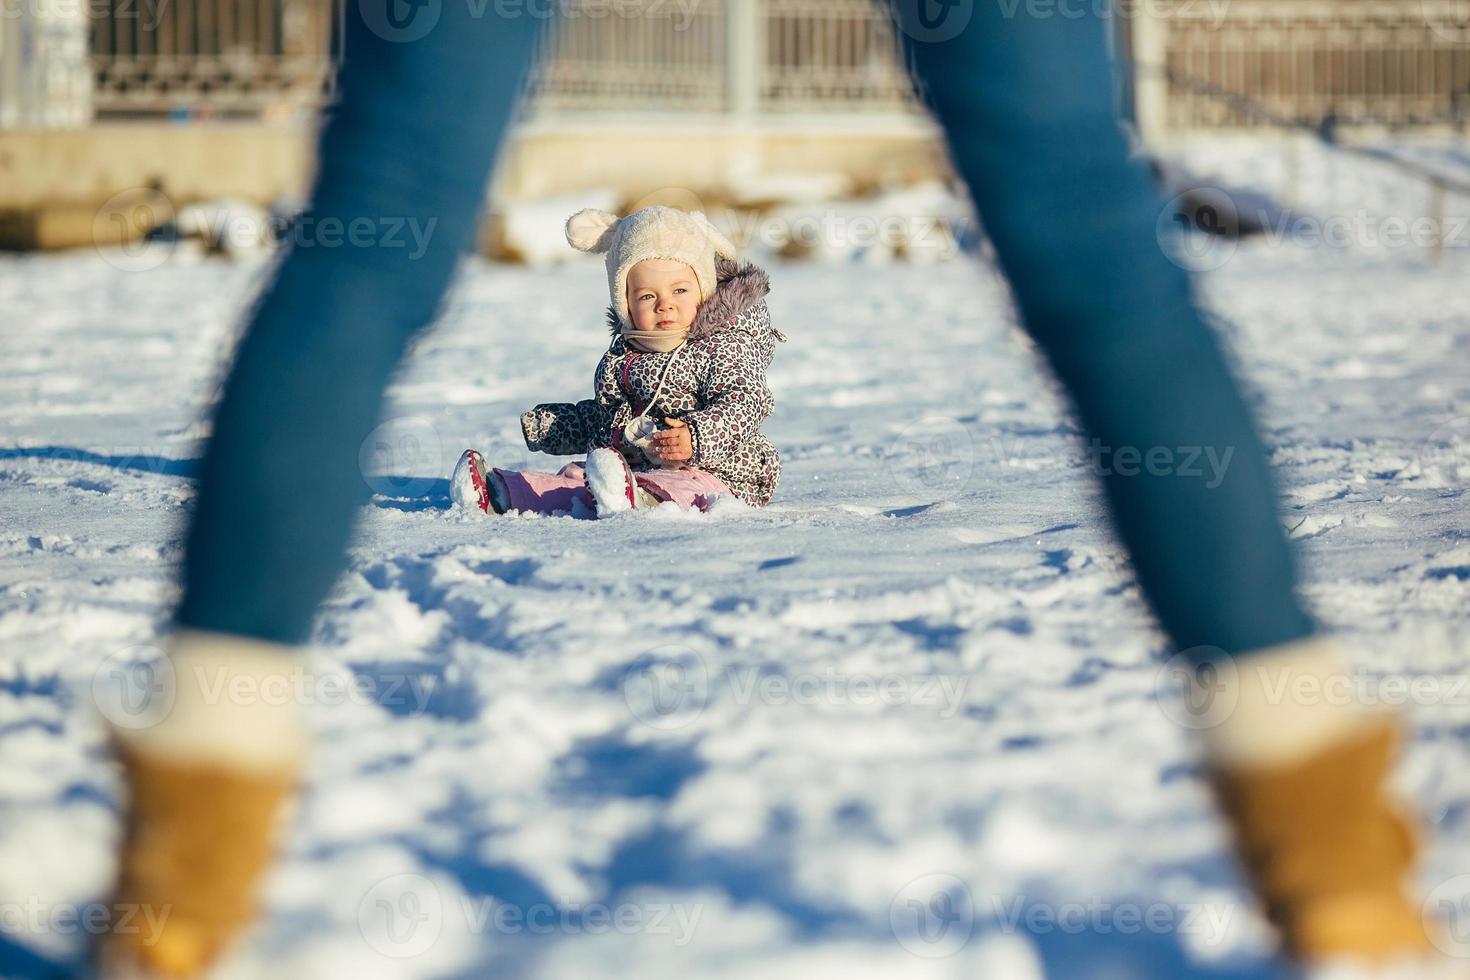 La Petite Fille Dans Des Vêtements D'hiver Joue Dans La Neige Avec Son Hiver  Image stock - Image du femelle, enfant: 67518013